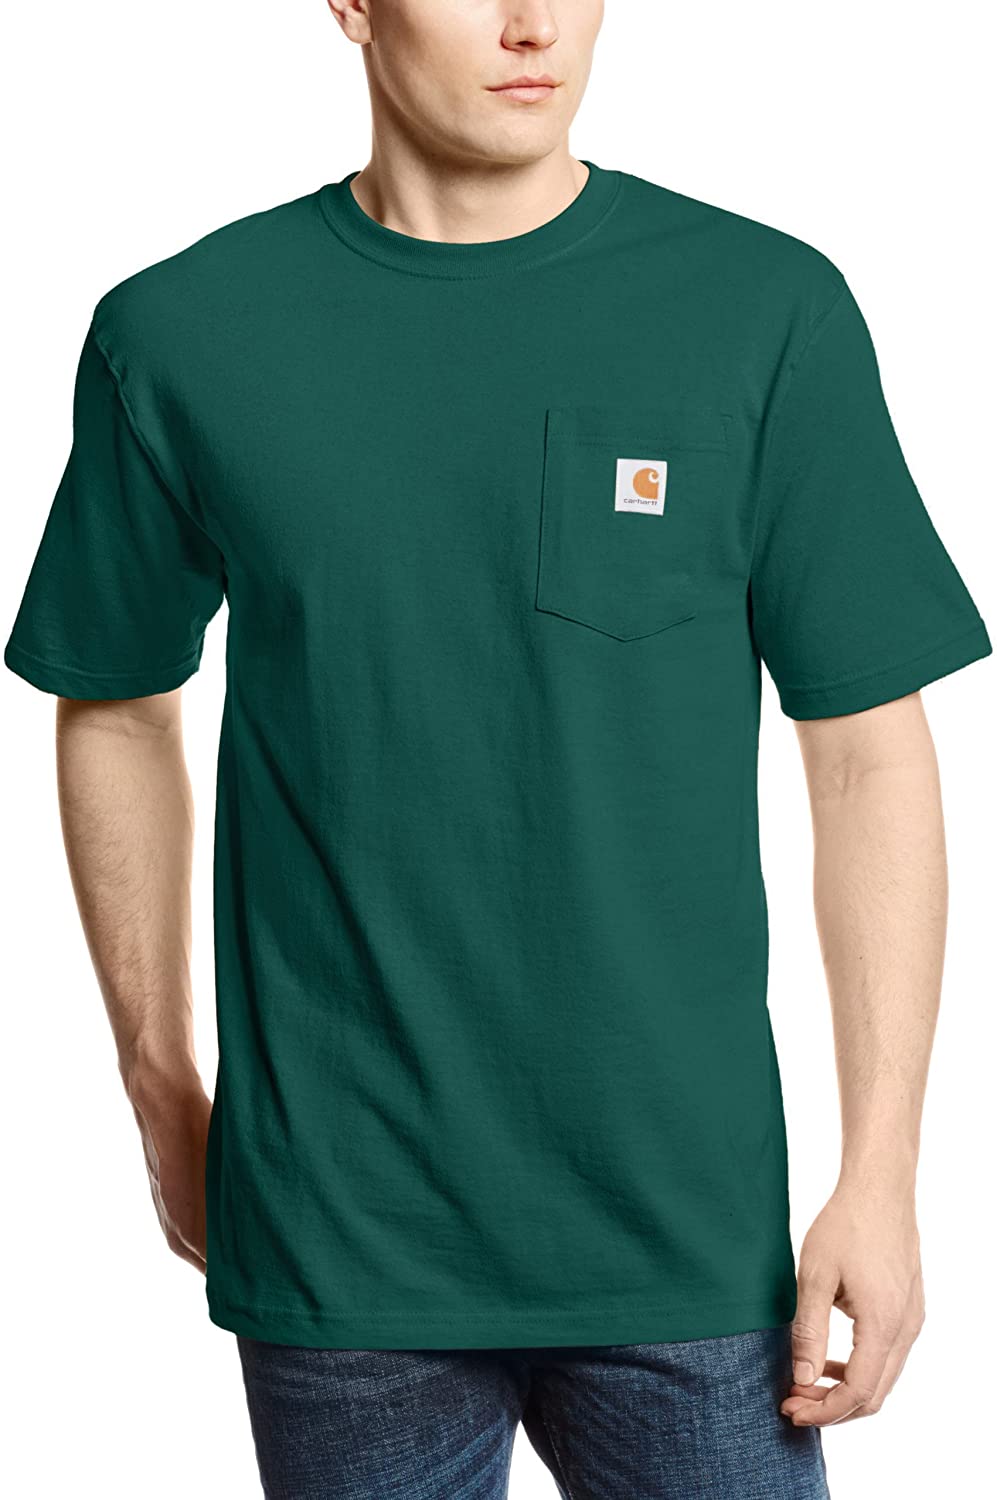 Details about   Carhartt Men's Workwear Pocket Short Sleeve T-Shirt Regular Big & Tall Cotton 